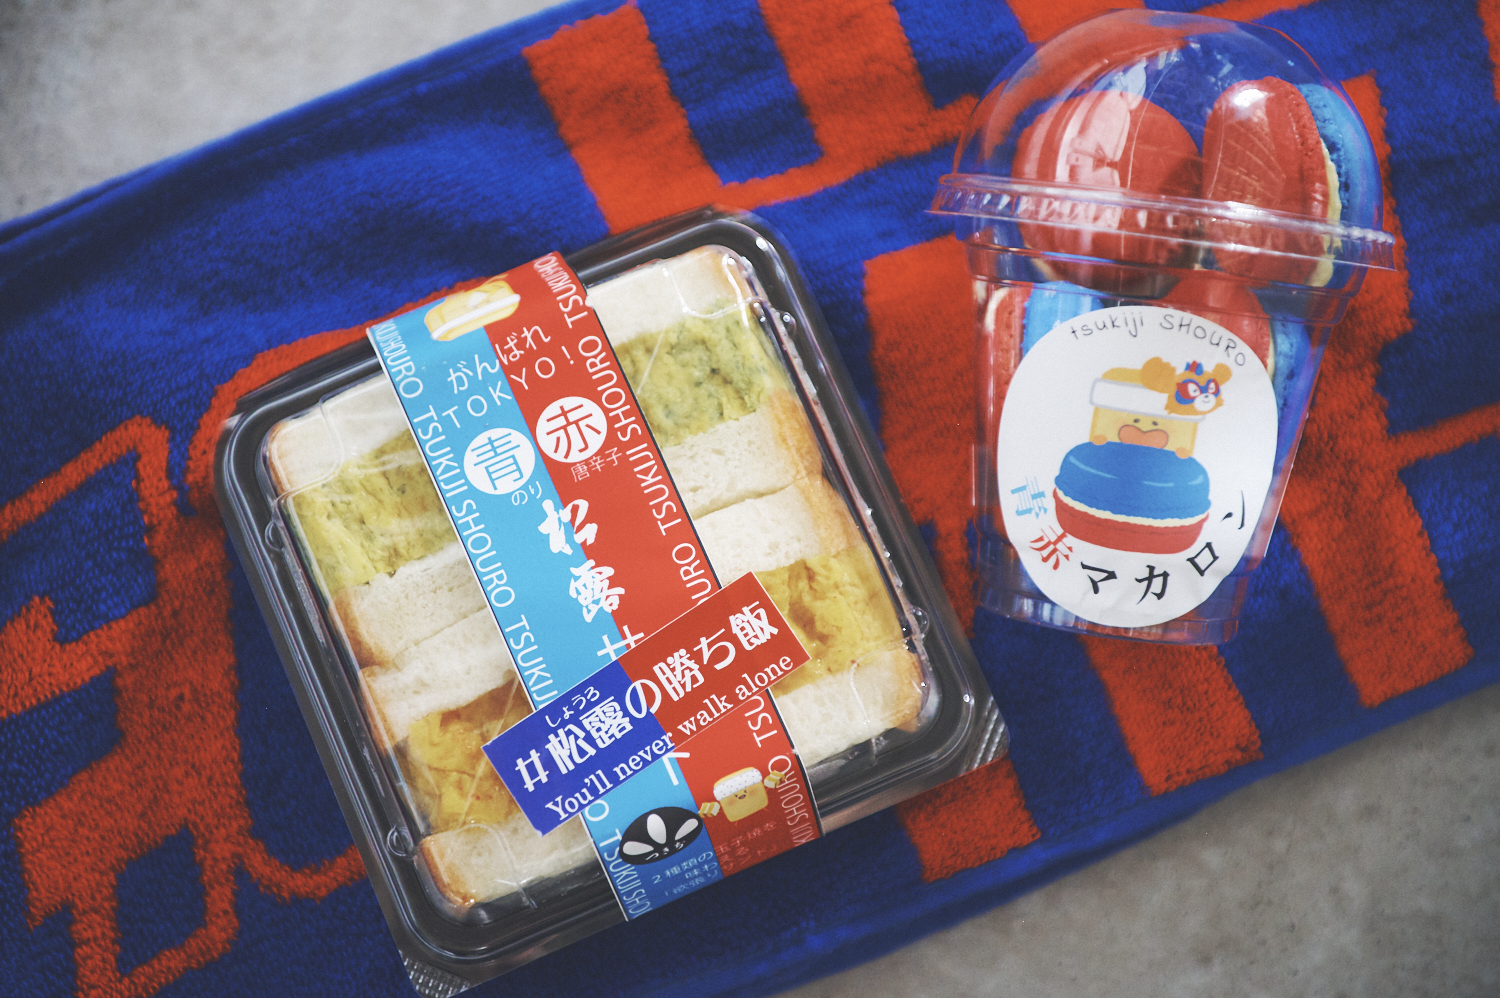 左から、〈つきぢ松露〉の「青赤松露サンド」600円、「青赤マカロンプチ」6個入 1,500円。